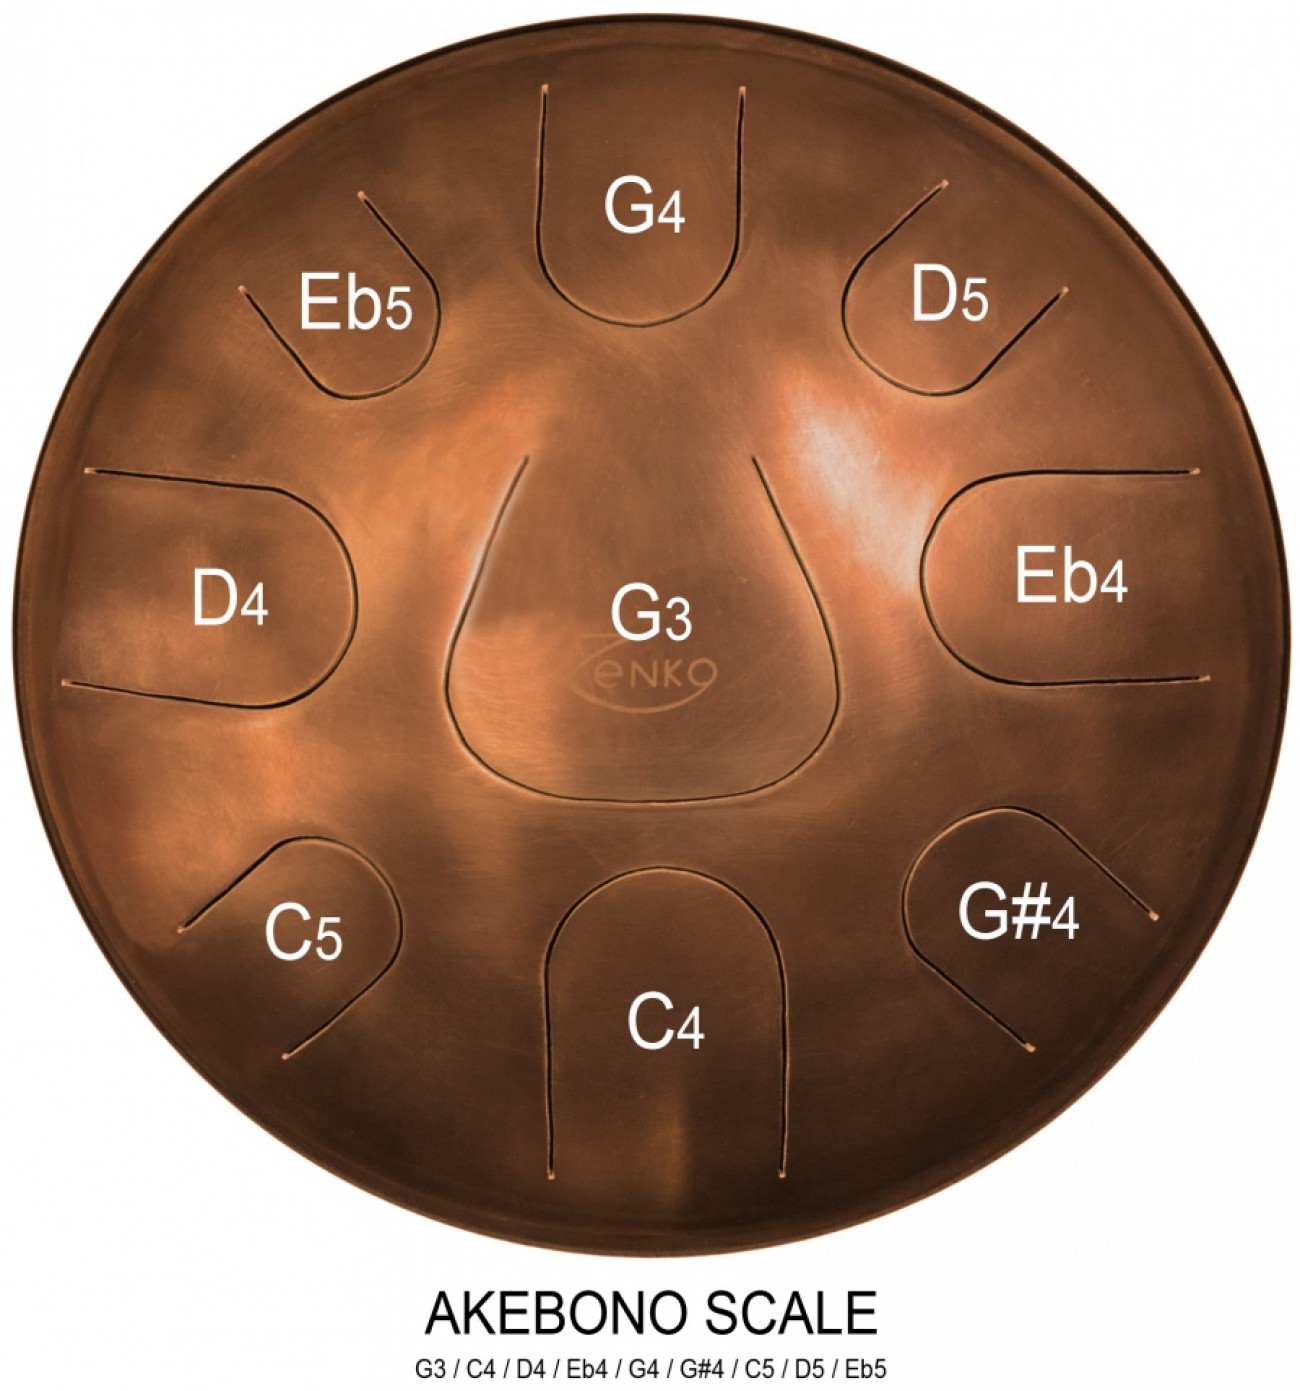 Zenko Akebono Scale